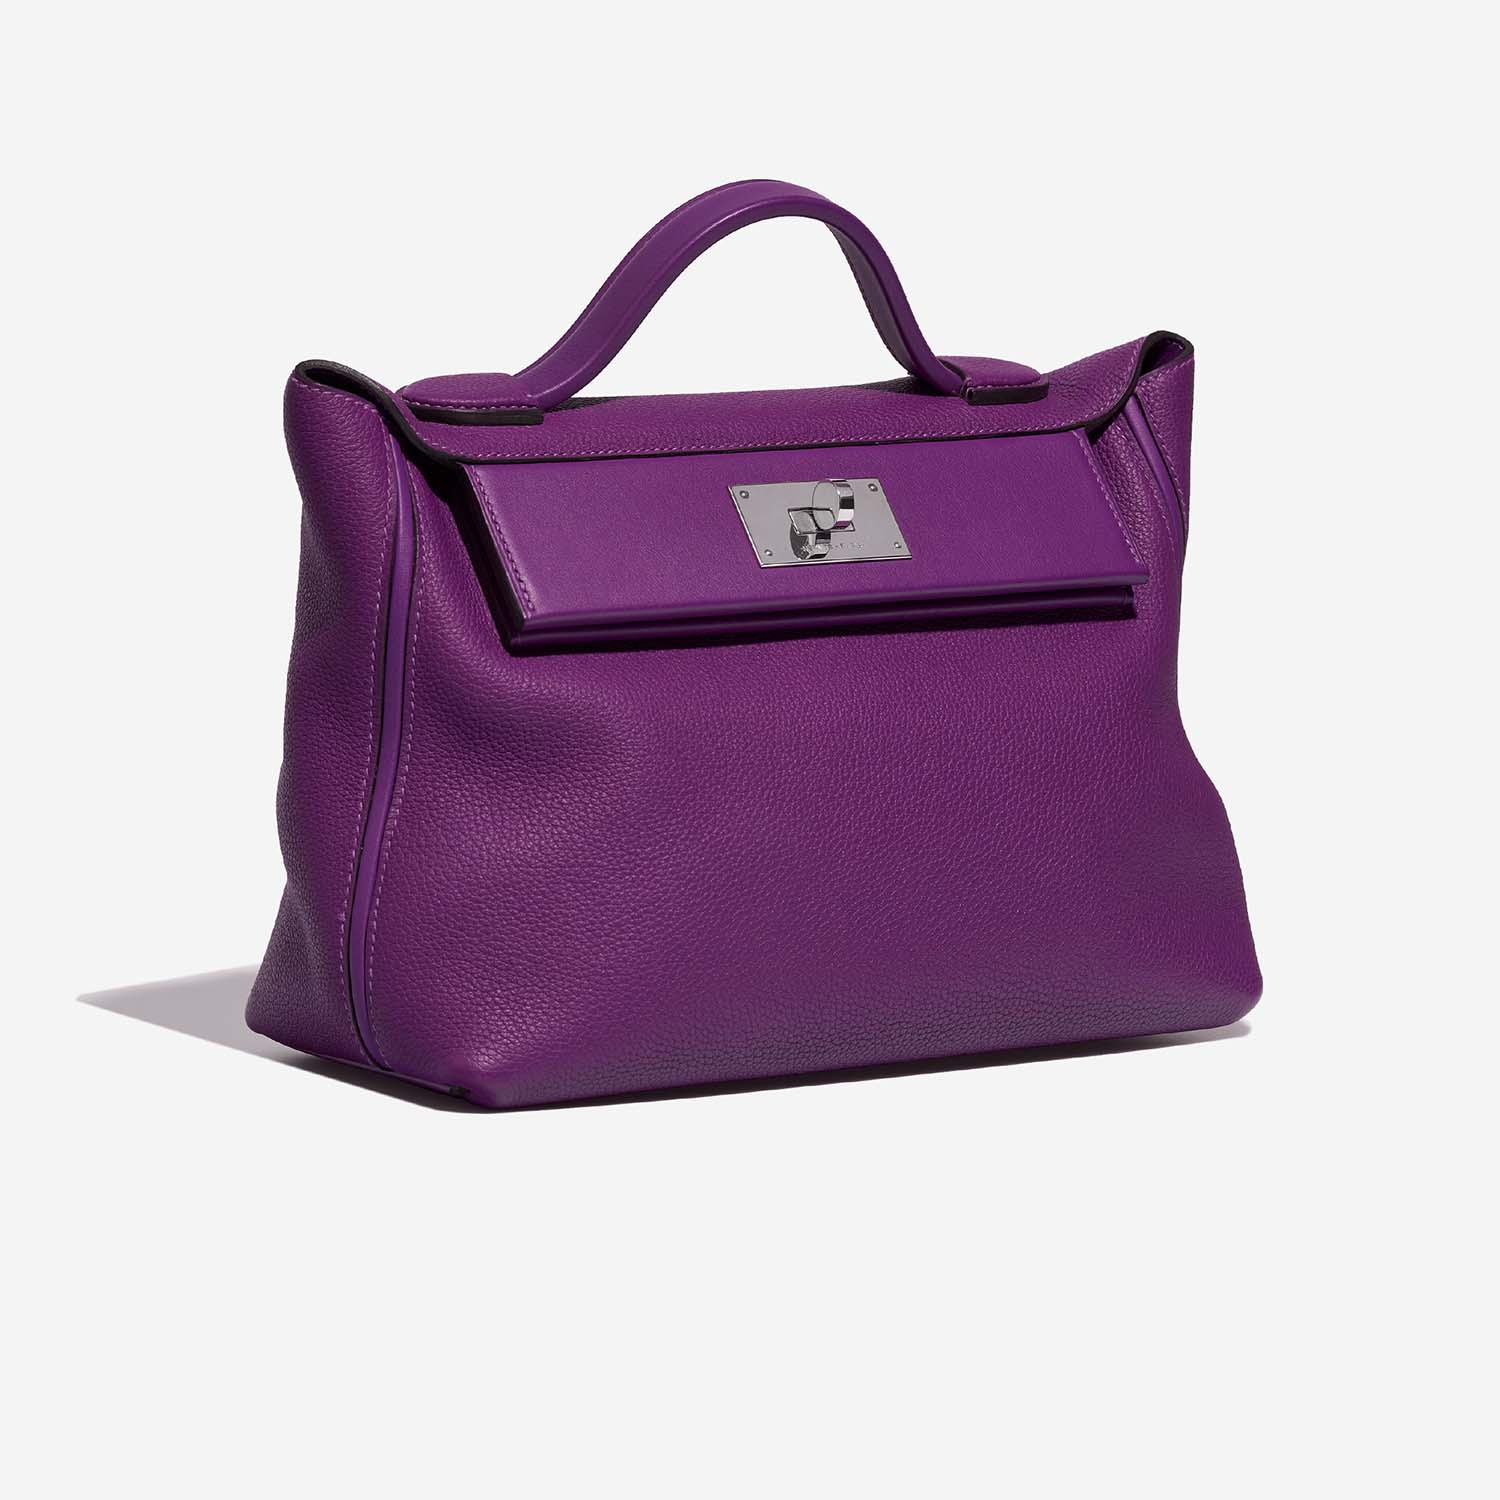 Sac Hermès d'occasion 24/24 29 Clémence Anémone Violet | Vendez votre sac de créateur sur Saclab.com